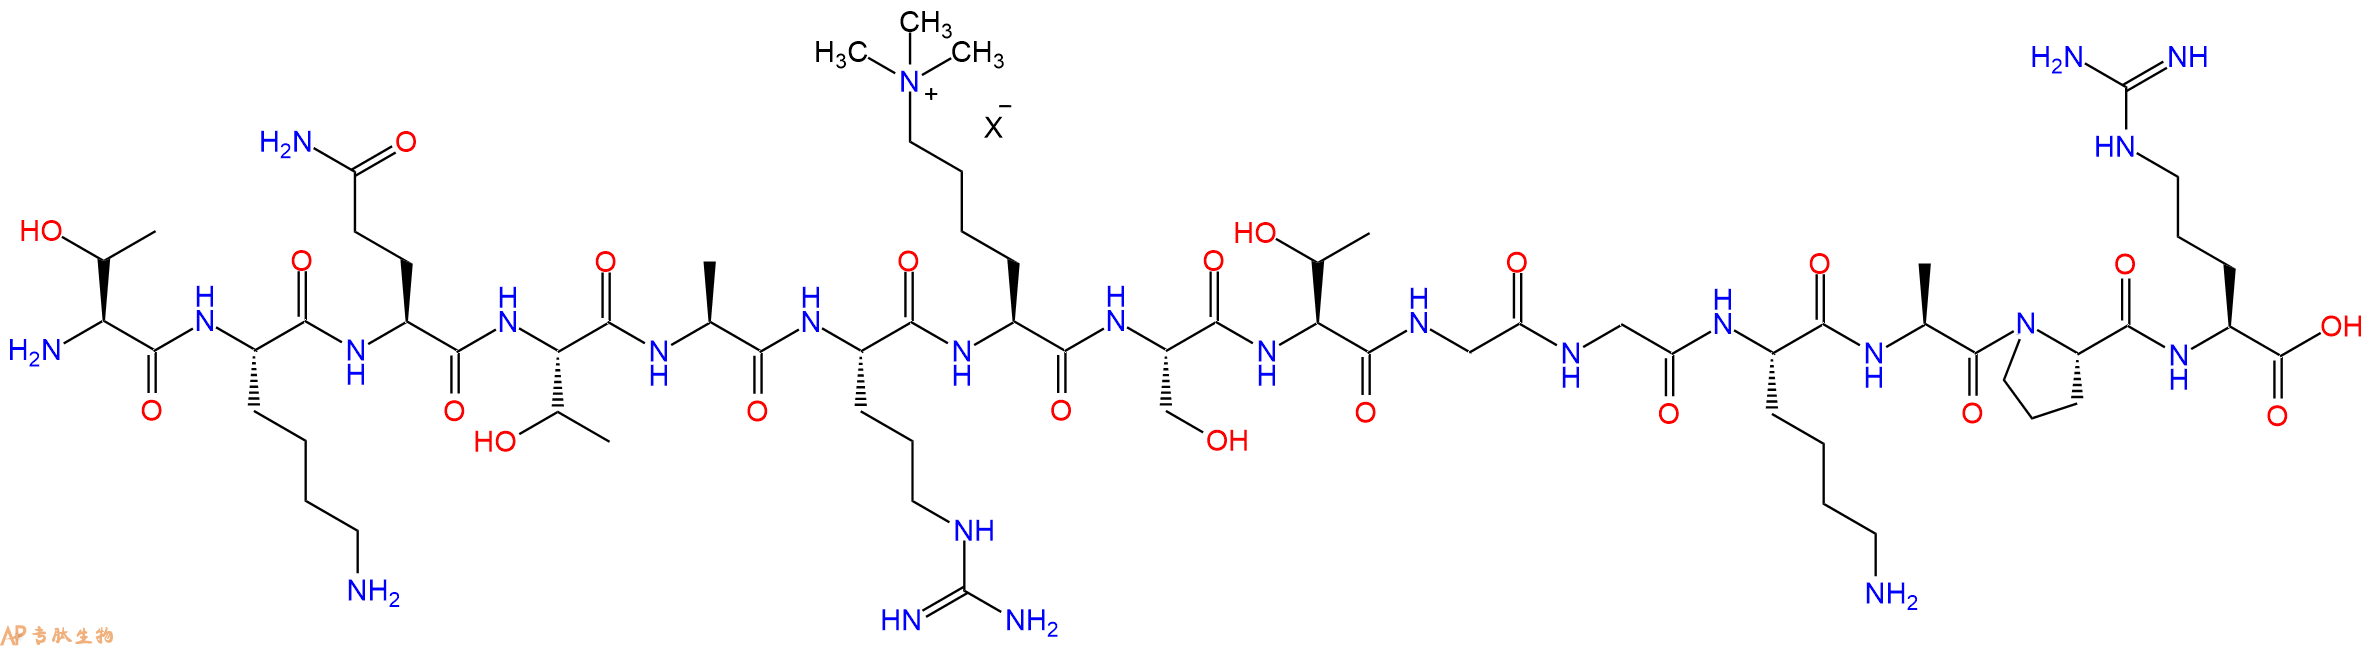 专肽生物产品组蛋白肽段[Lys(Me3)9]-Histone H3(3-17), H3K9(Me3)